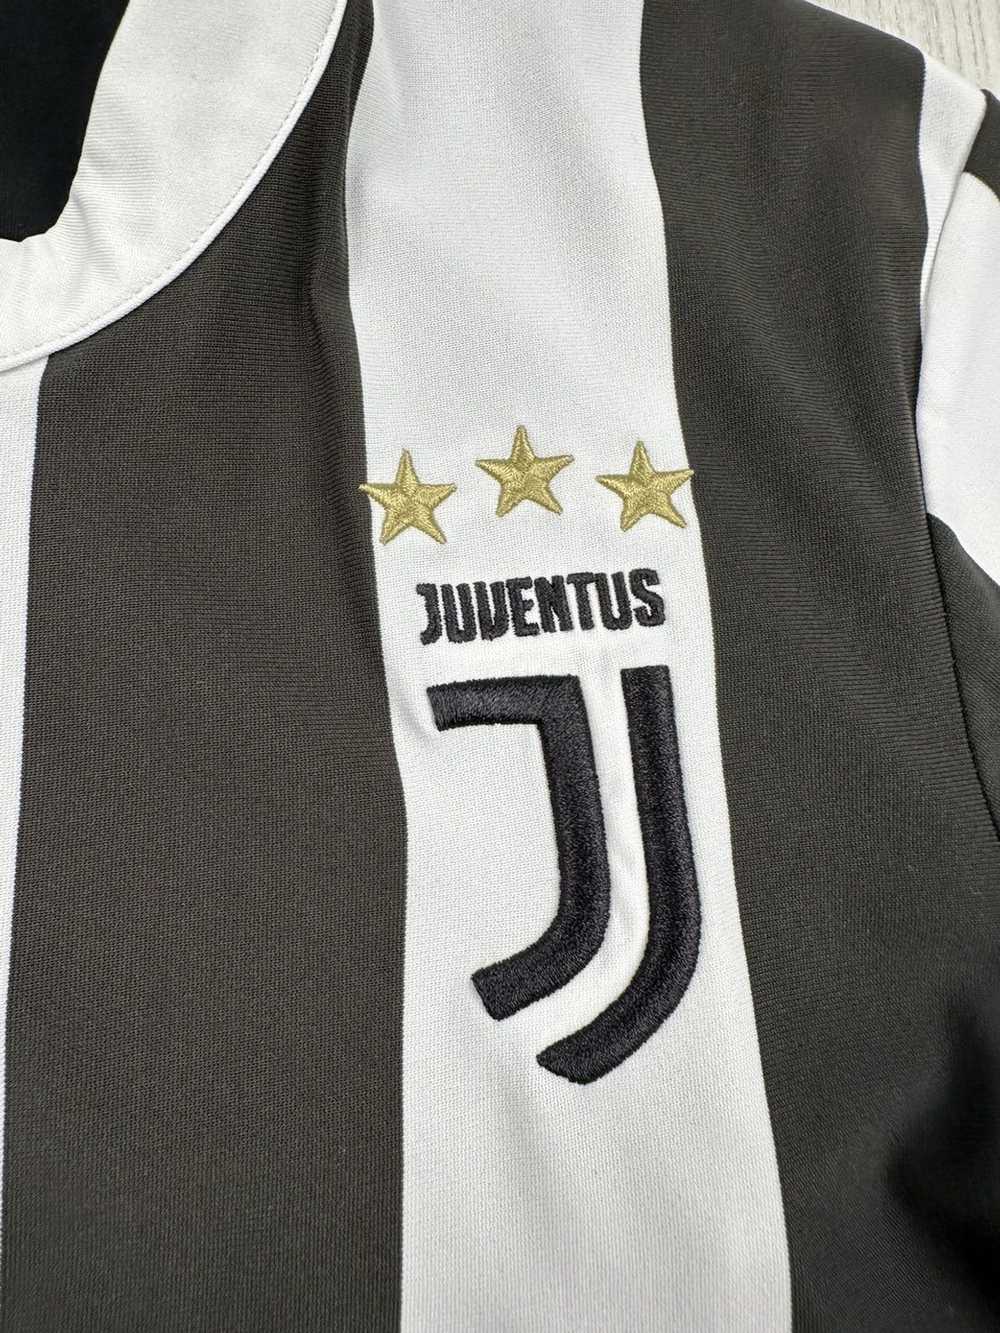 Adidas × Soccer Jersey × Streetwear Juventus 2017… - image 3